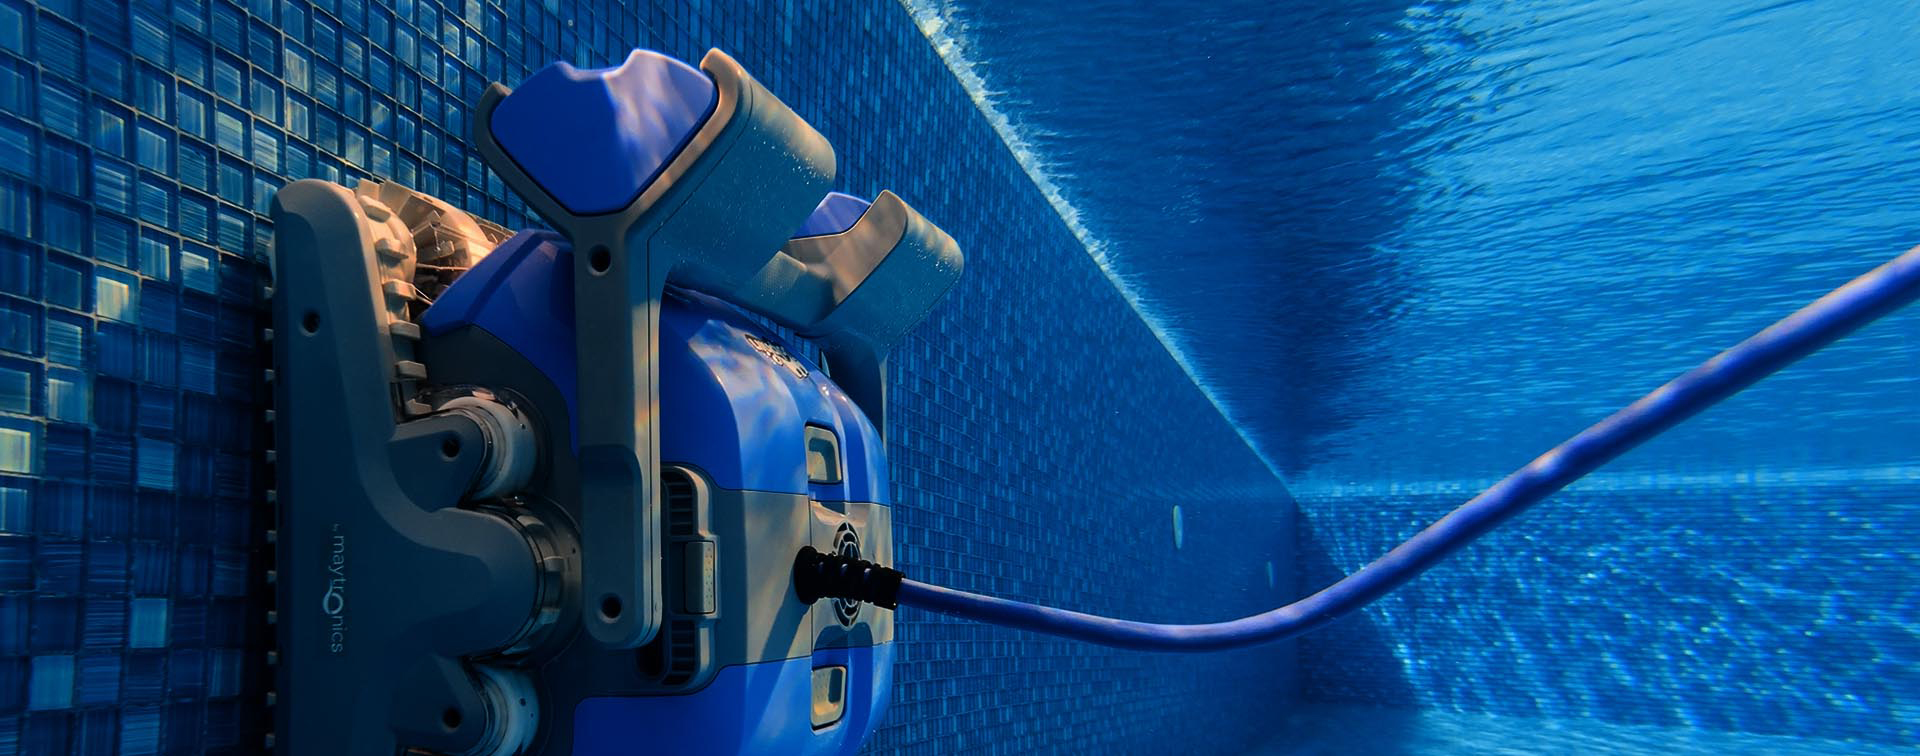 Mejores limpiafondos eléctricos y manuales para la piscina - Blog